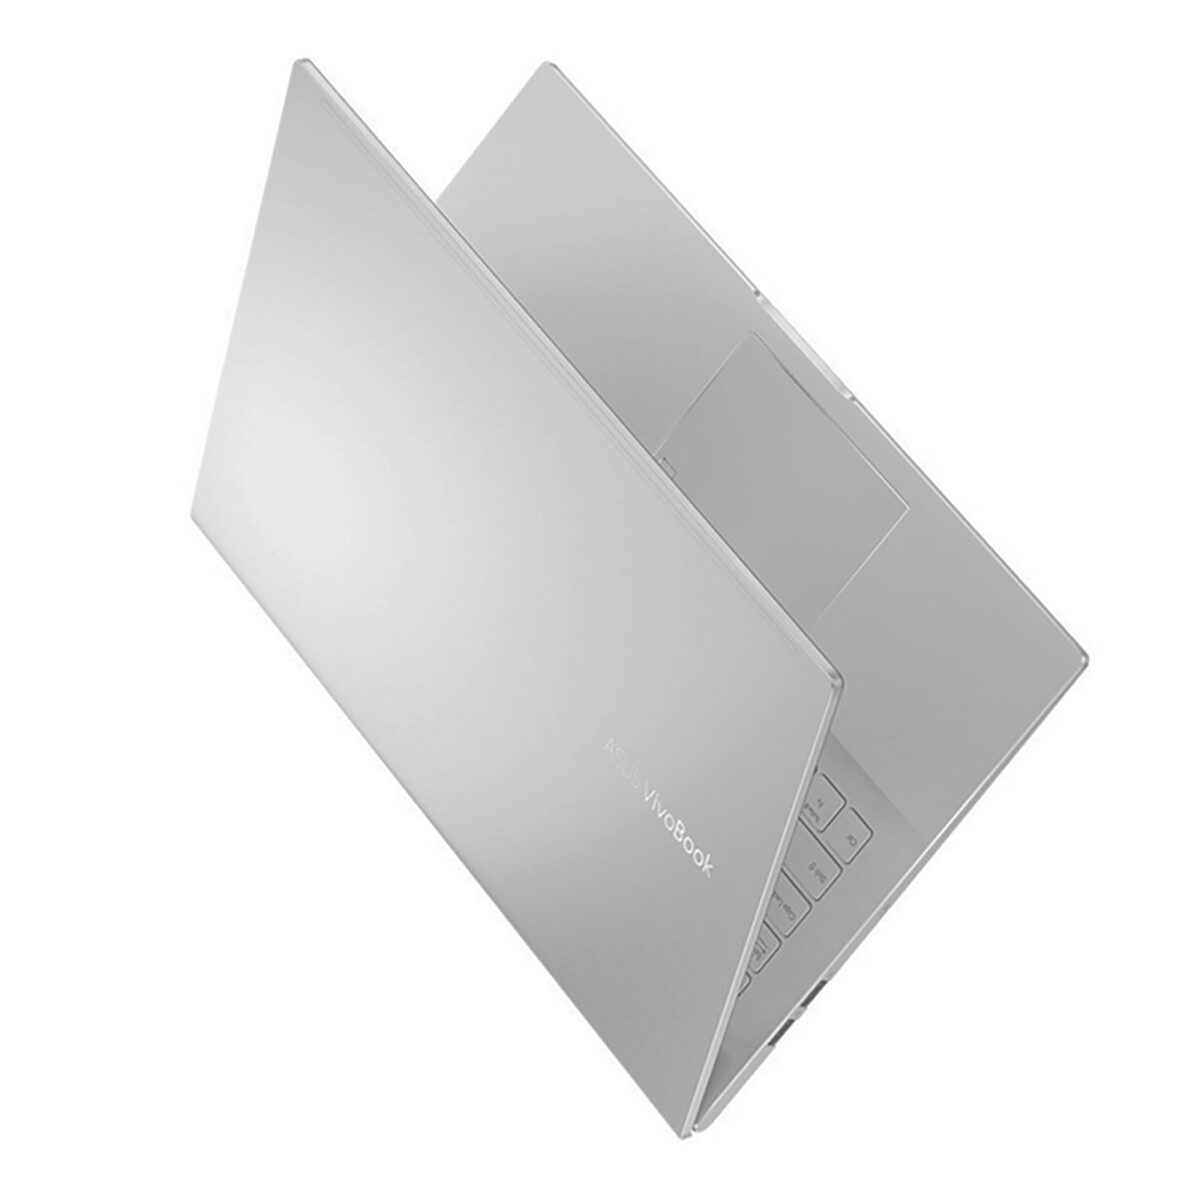 Notebook Asus Vivobook 15 K513 K513EA-L11236T - 15.6" Led. Intel Core I5 1135G7. Windows 10. 8GB Ram - 001 